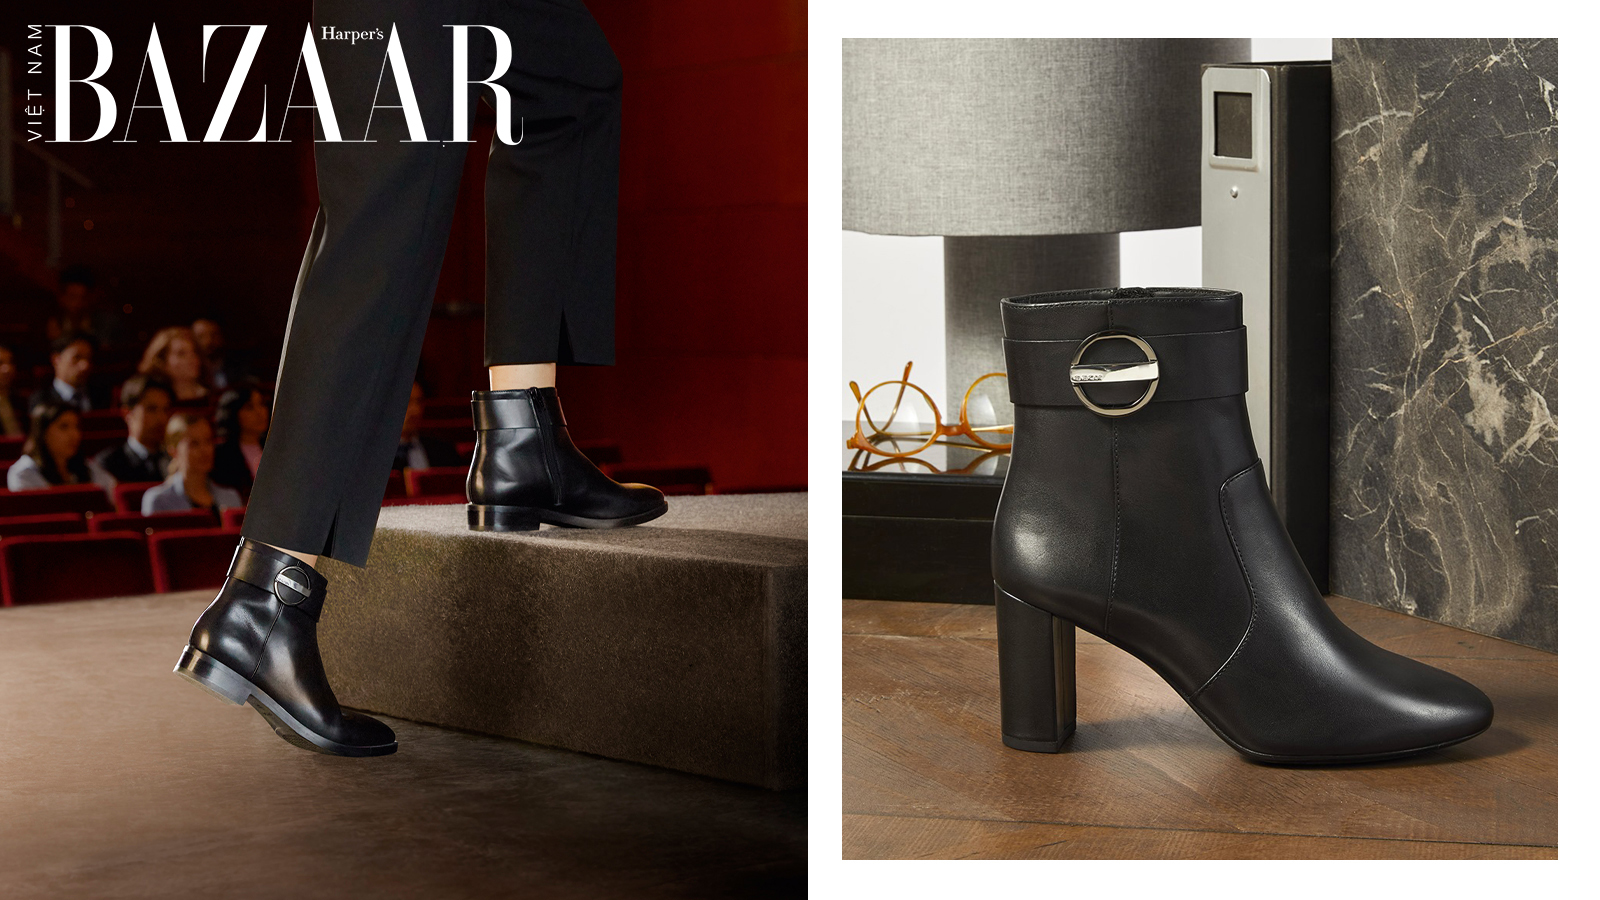 Harper's Bazaar_Geox ra mắt ankle boots thời thượng cho ngày hè_03